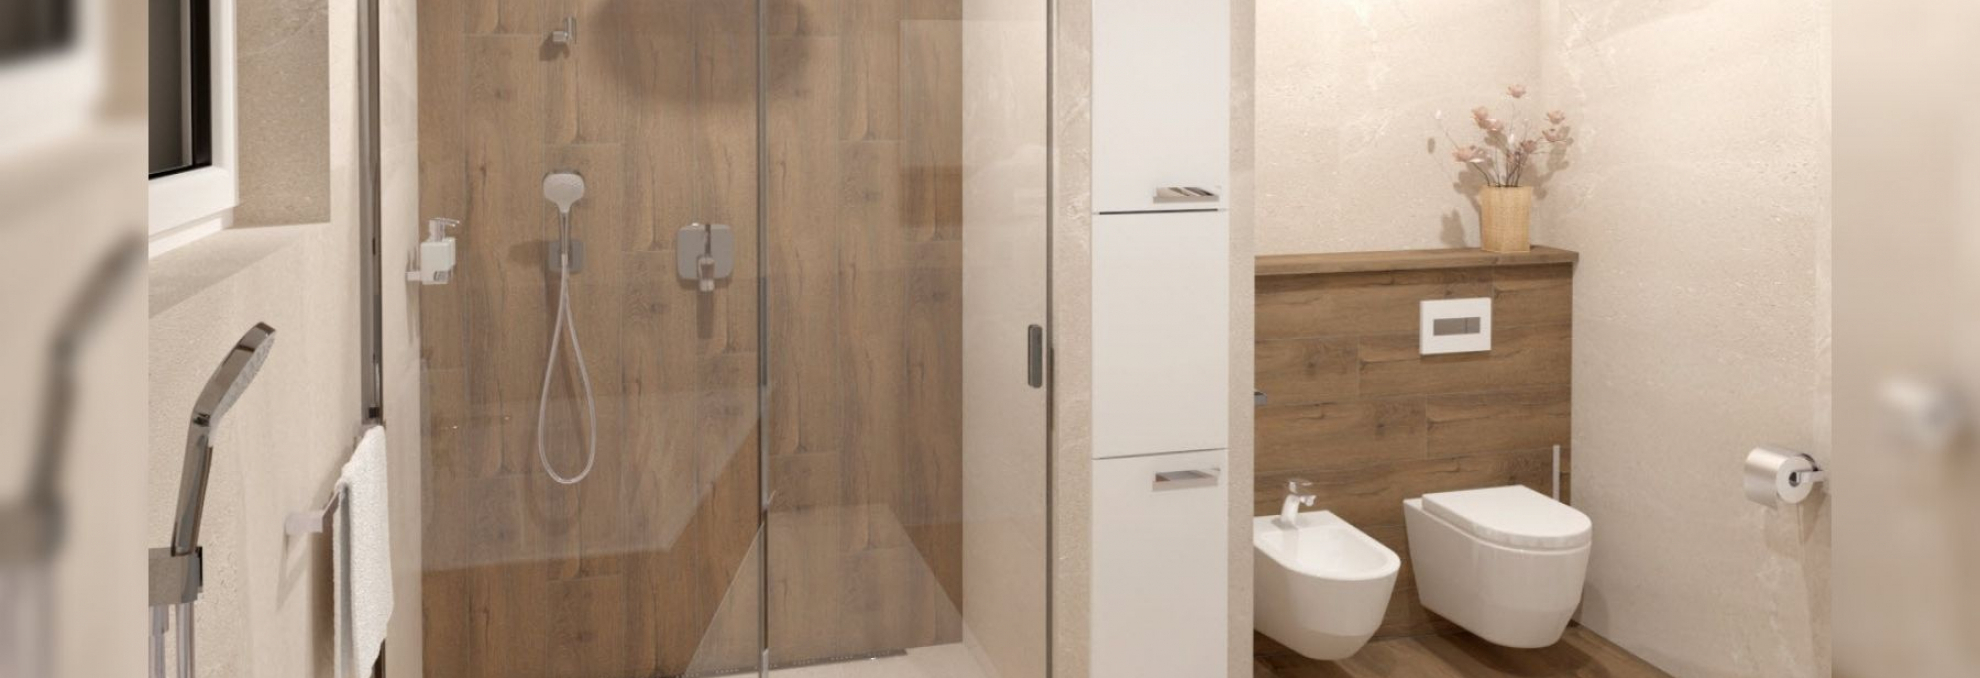 Koupelna s obkladem a dlažbou Planches v designu dřeva